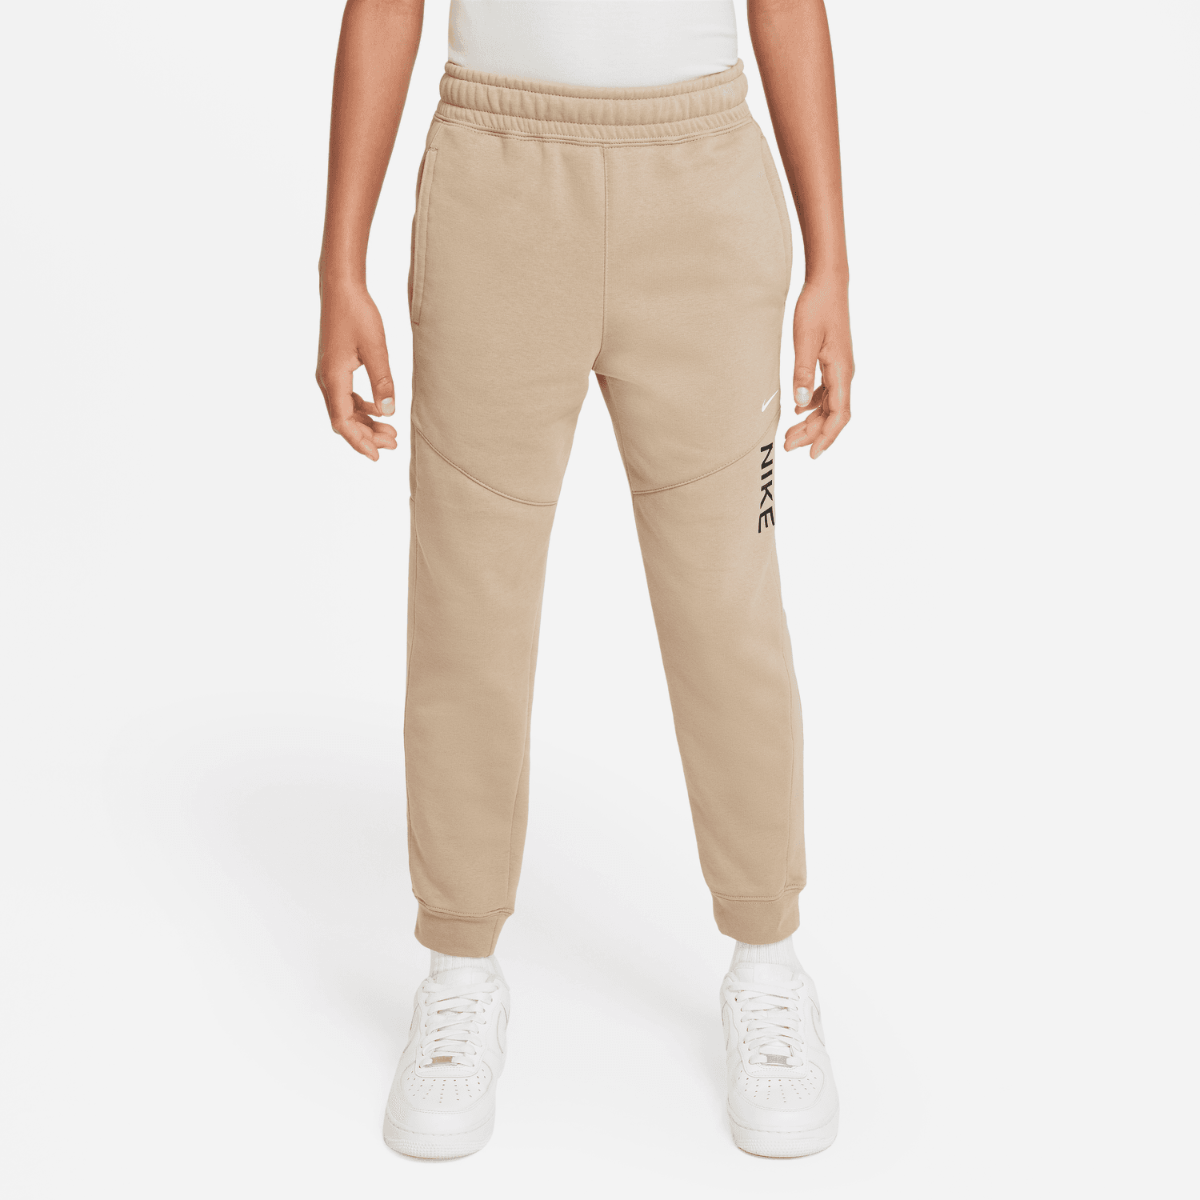 Pantalón Nike Sportswear Tech Fleece Junior - Beige